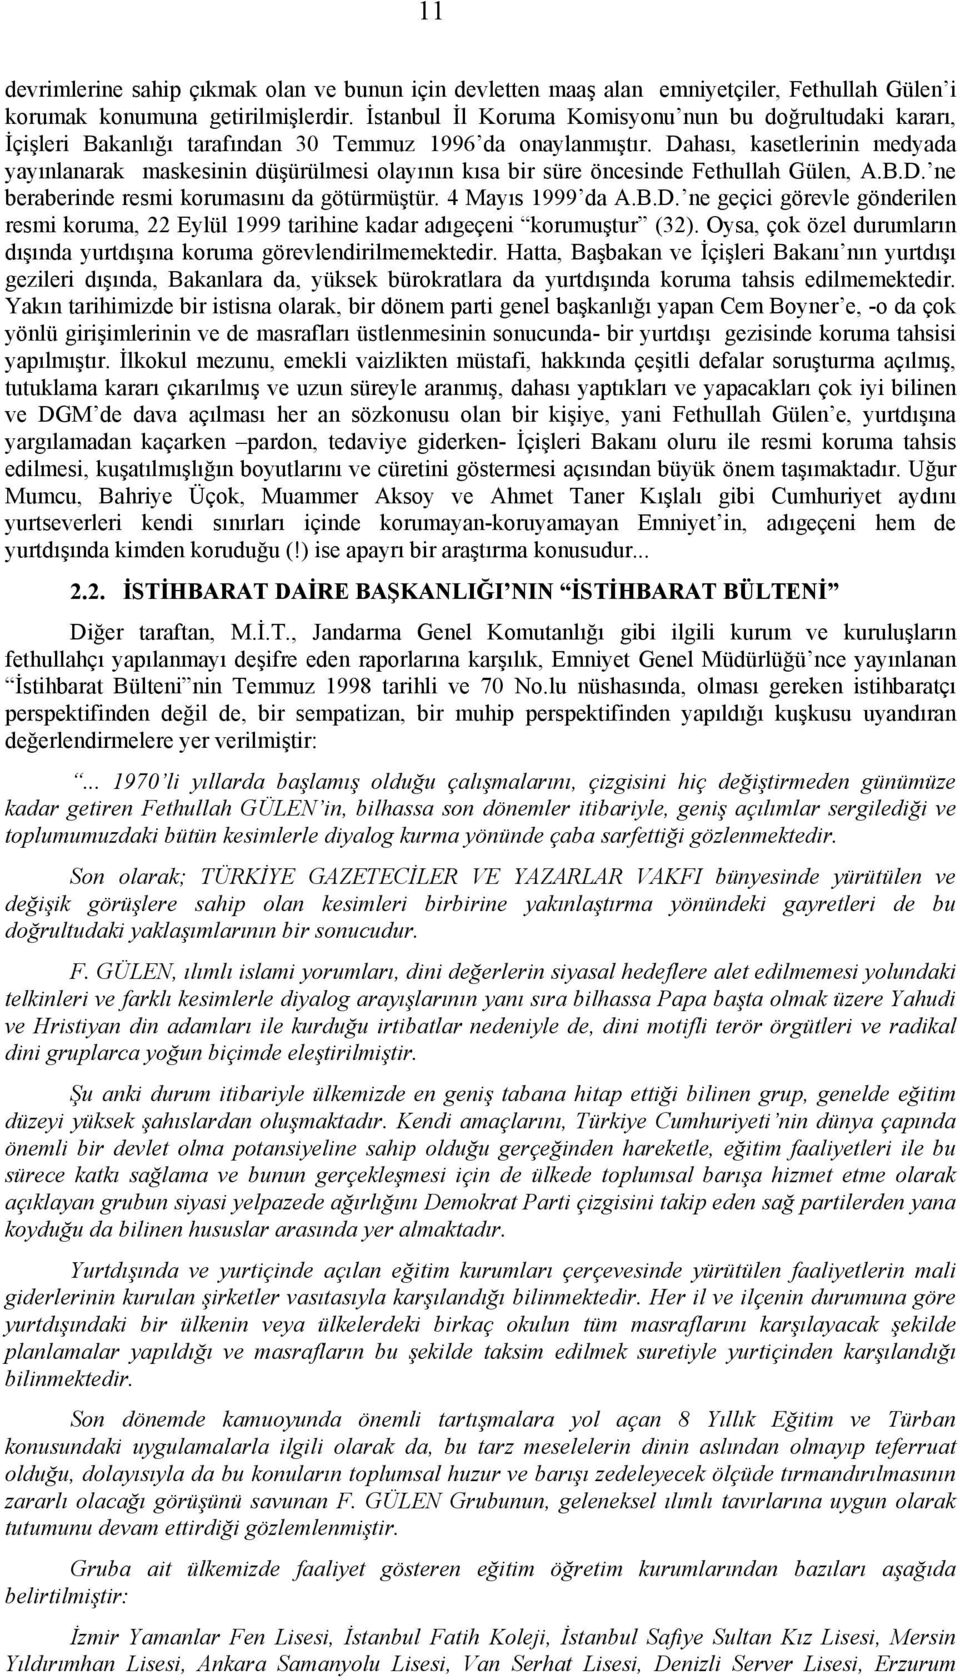 Dahası, kasetlerinin medyada yayınlanarak maskesinin düşürülmesi olayının kısa bir süre öncesinde Fethullah Gülen, A.B.D. ne beraberinde resmi korumasını da götürmüştür. 4 Mayıs 1999 da A.B.D. ne geçici görevle gönderilen resmi koruma, 22 Eylül 1999 tarihine kadar adıgeçeni korumuştur (32).